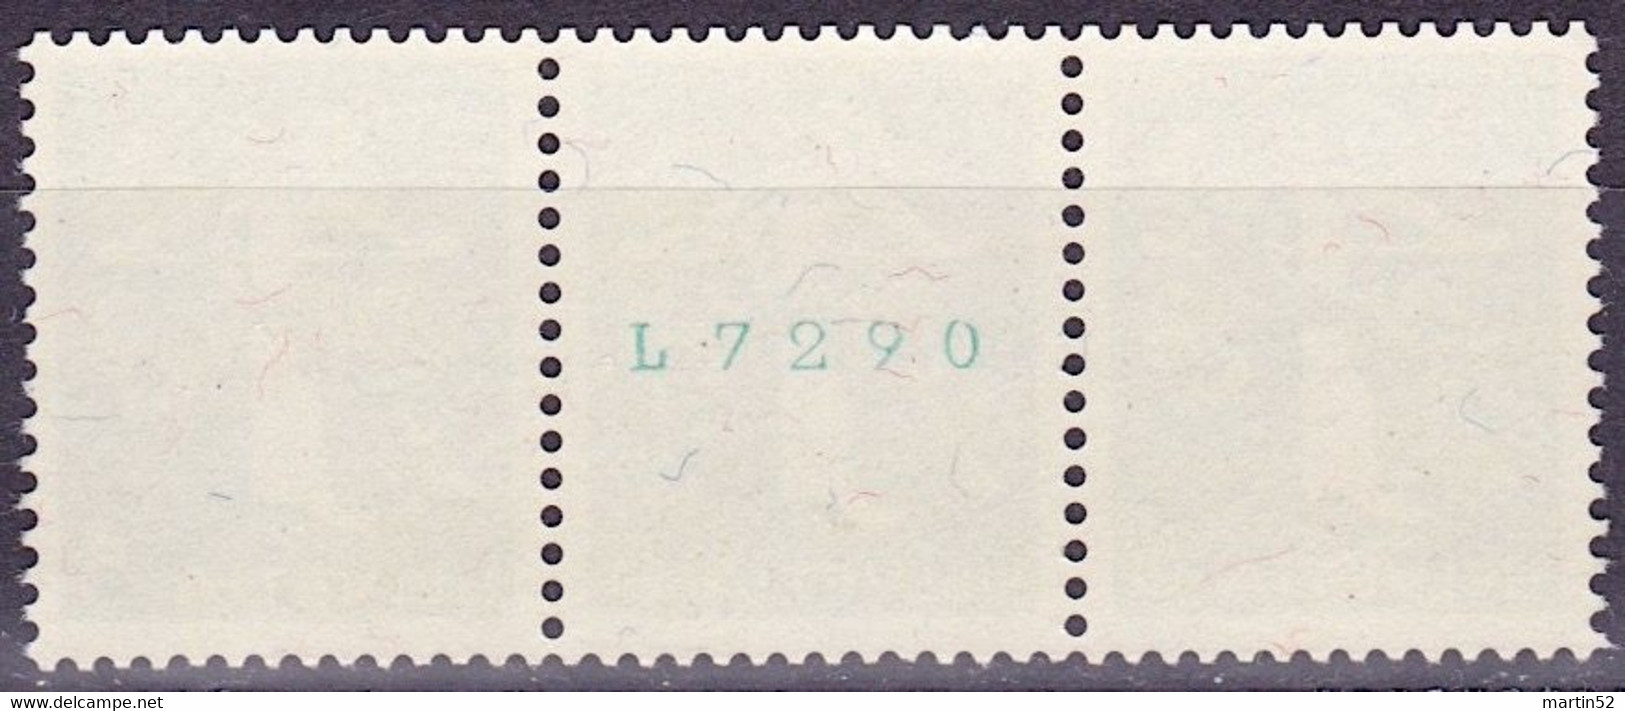 Schweiz Suisse 1939: Zusammendruck Se-tenant Zu Z25b Mi W10 ** Mit Nr. Avec N° L7290 Postfrisch MNH (Zumstein CHF 21.00) - Rollen